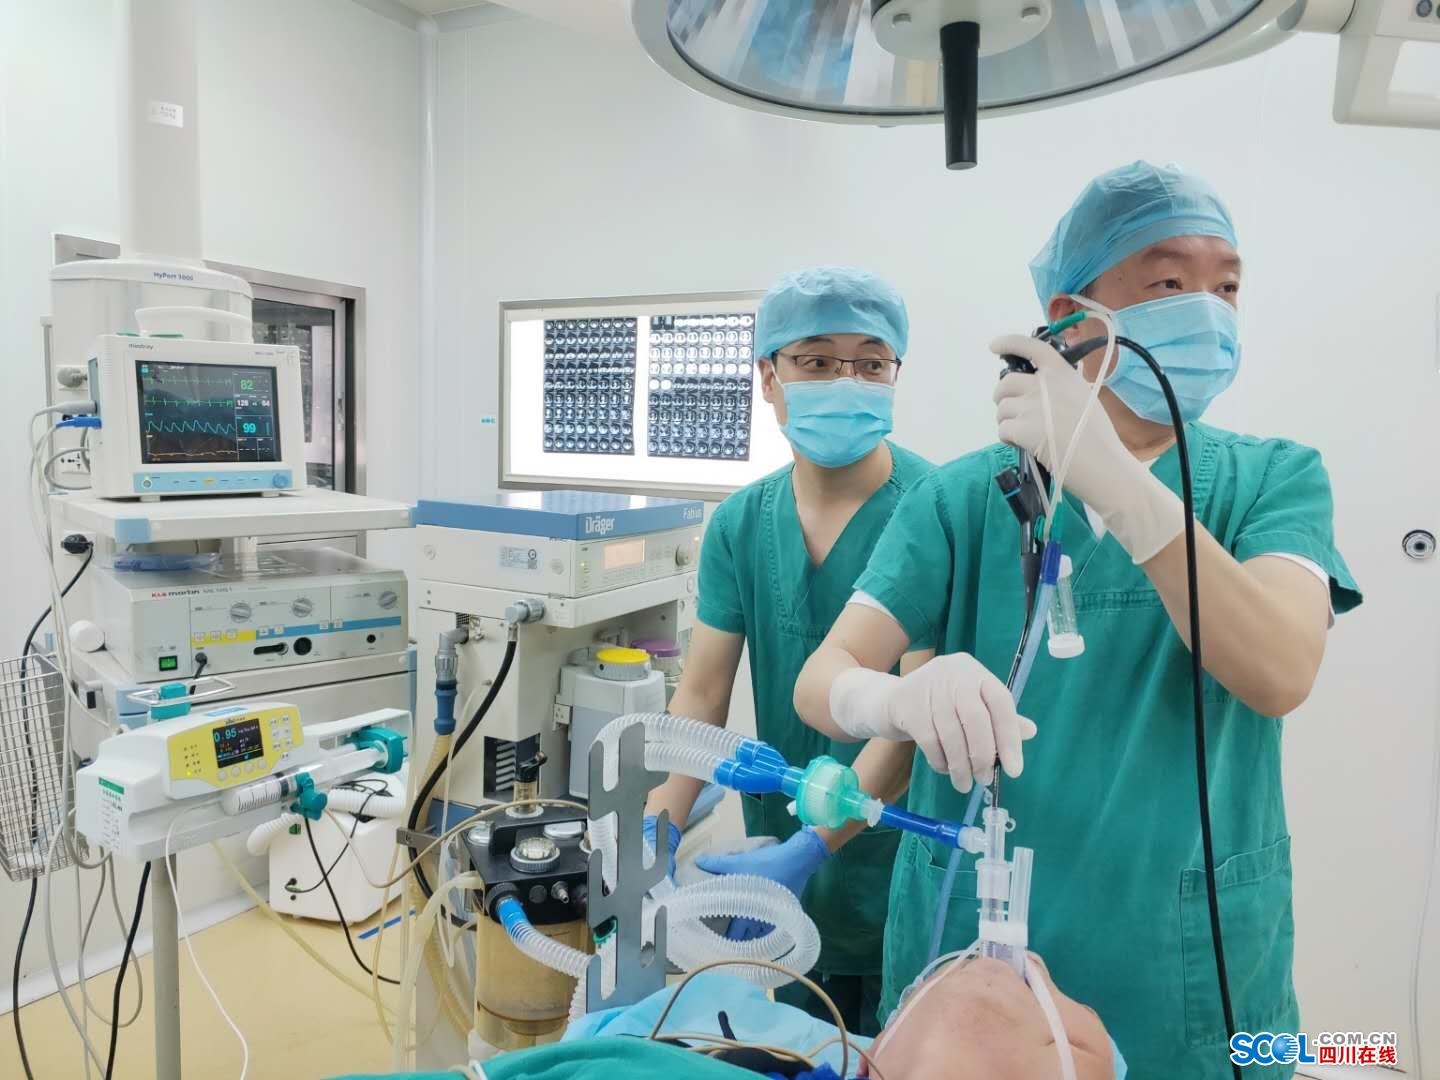 宁德市中医院成功开展首例“无痛”电子支气管镜检查术 - 健康快讯 - 东南网宁德频道